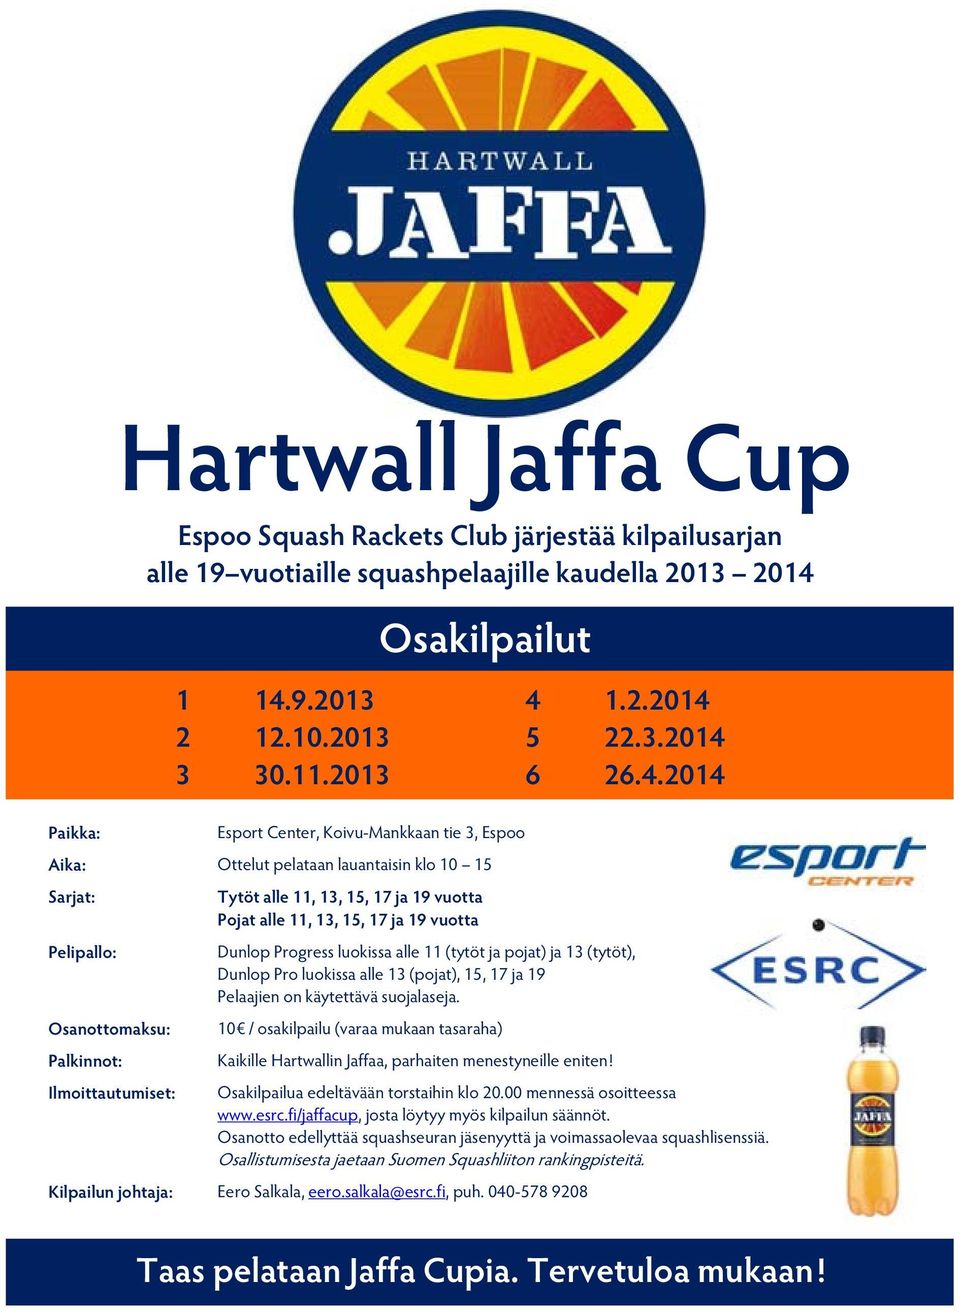 Palkinnot: Ilmoittautumiset: Hartwall Jaffa Cup Tytöt alle 11, 13, 15, 17 ja 19 vuotta Pojat alle 11, 13, 15, 17 ja 19 vuotta Osakilpailut Dunlop Progress luokissa alle 11 (tytöt ja pojat) ja 13